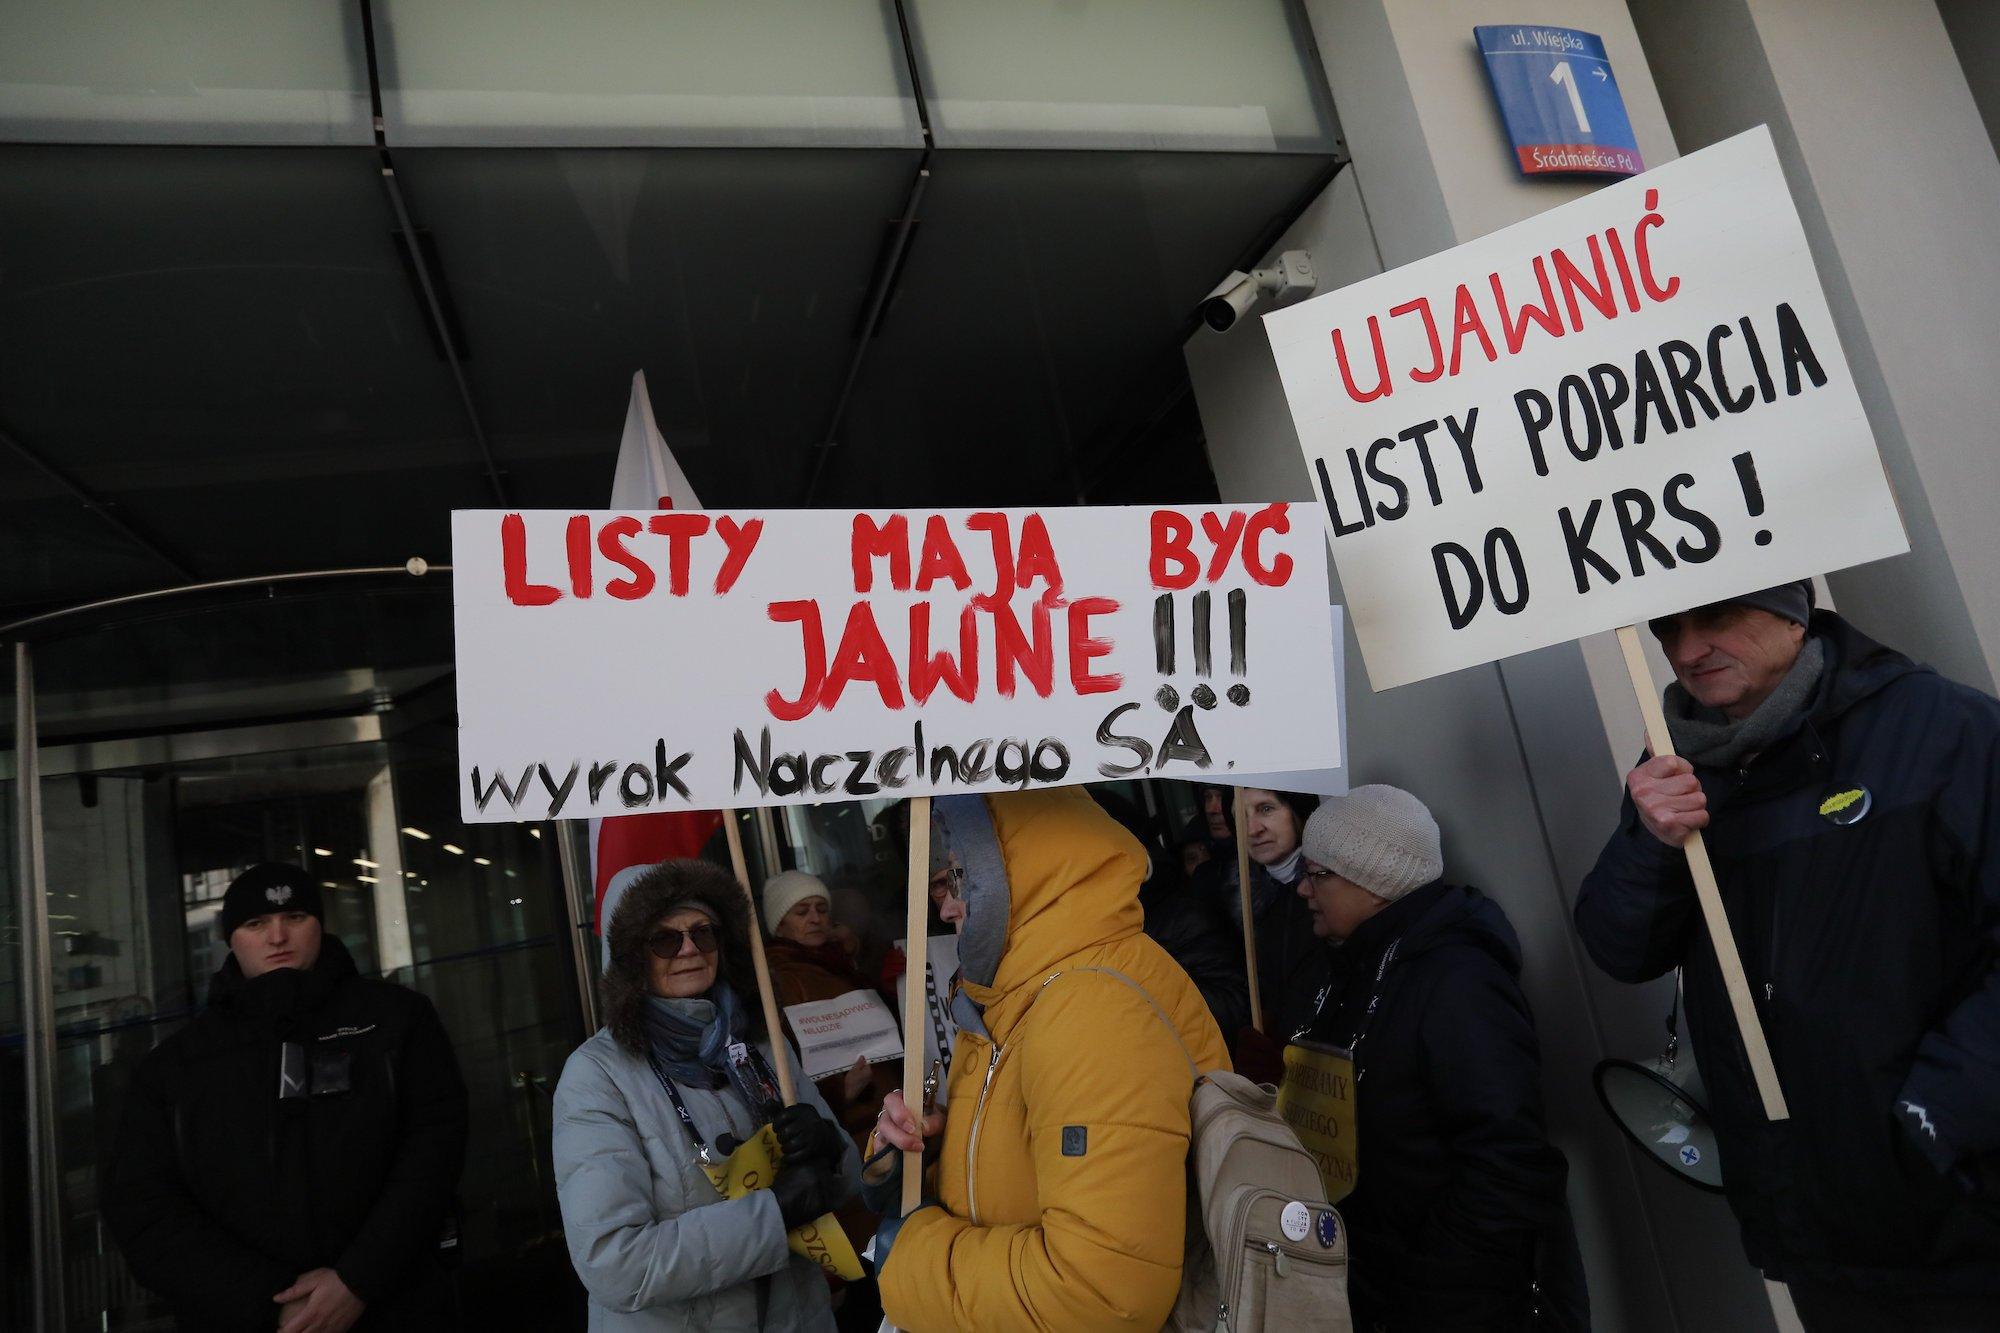 Protestujący z banerem "Listy mają być jawne"